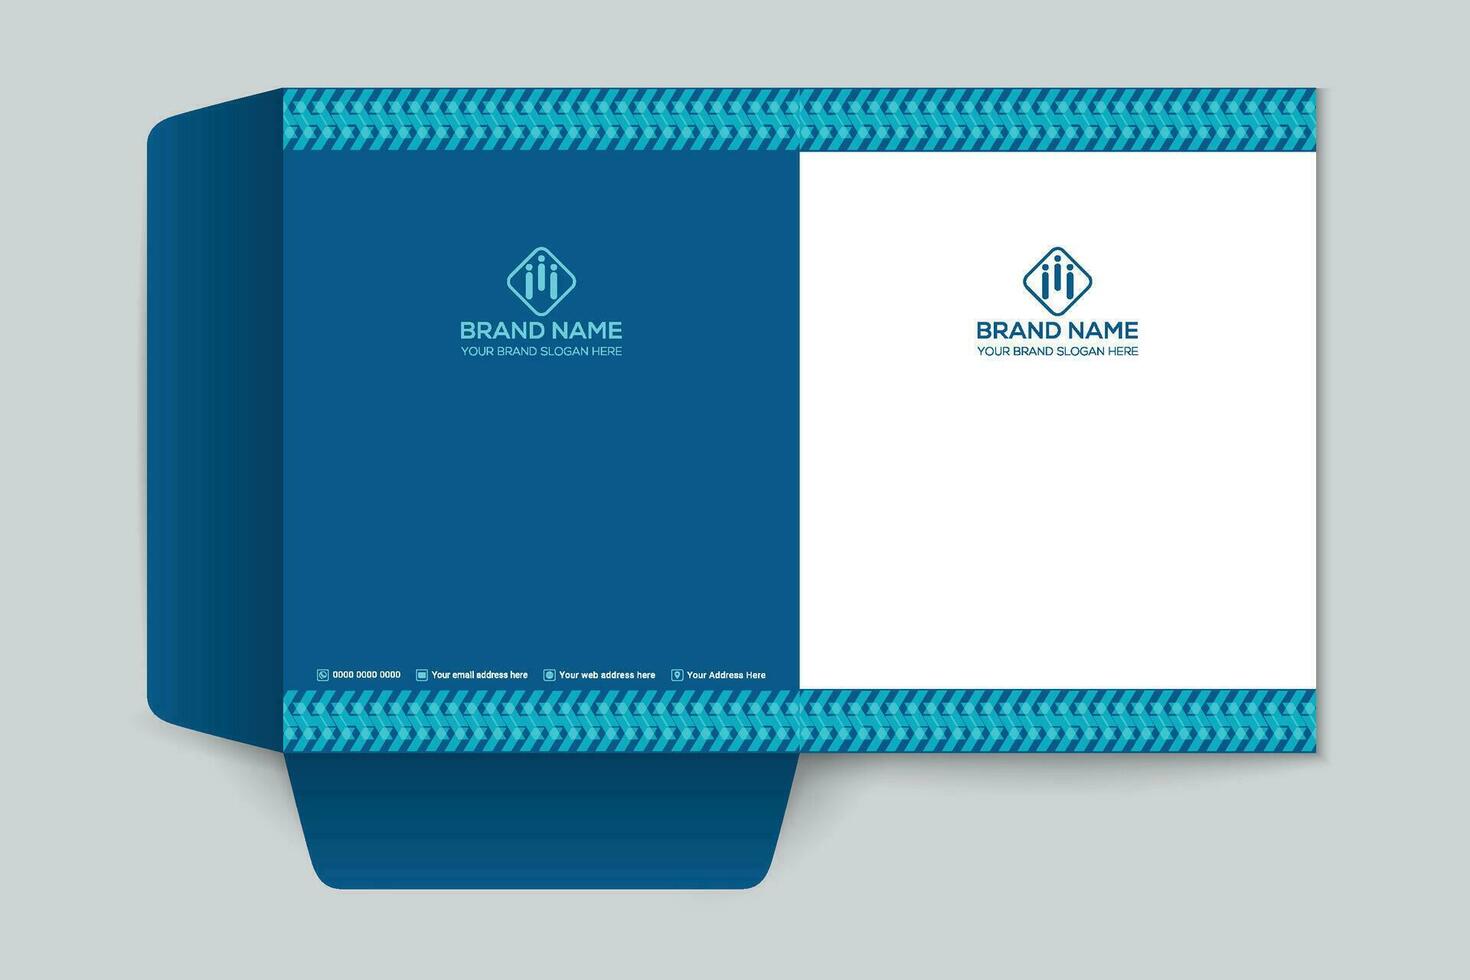 presentation folder design with blue color vector